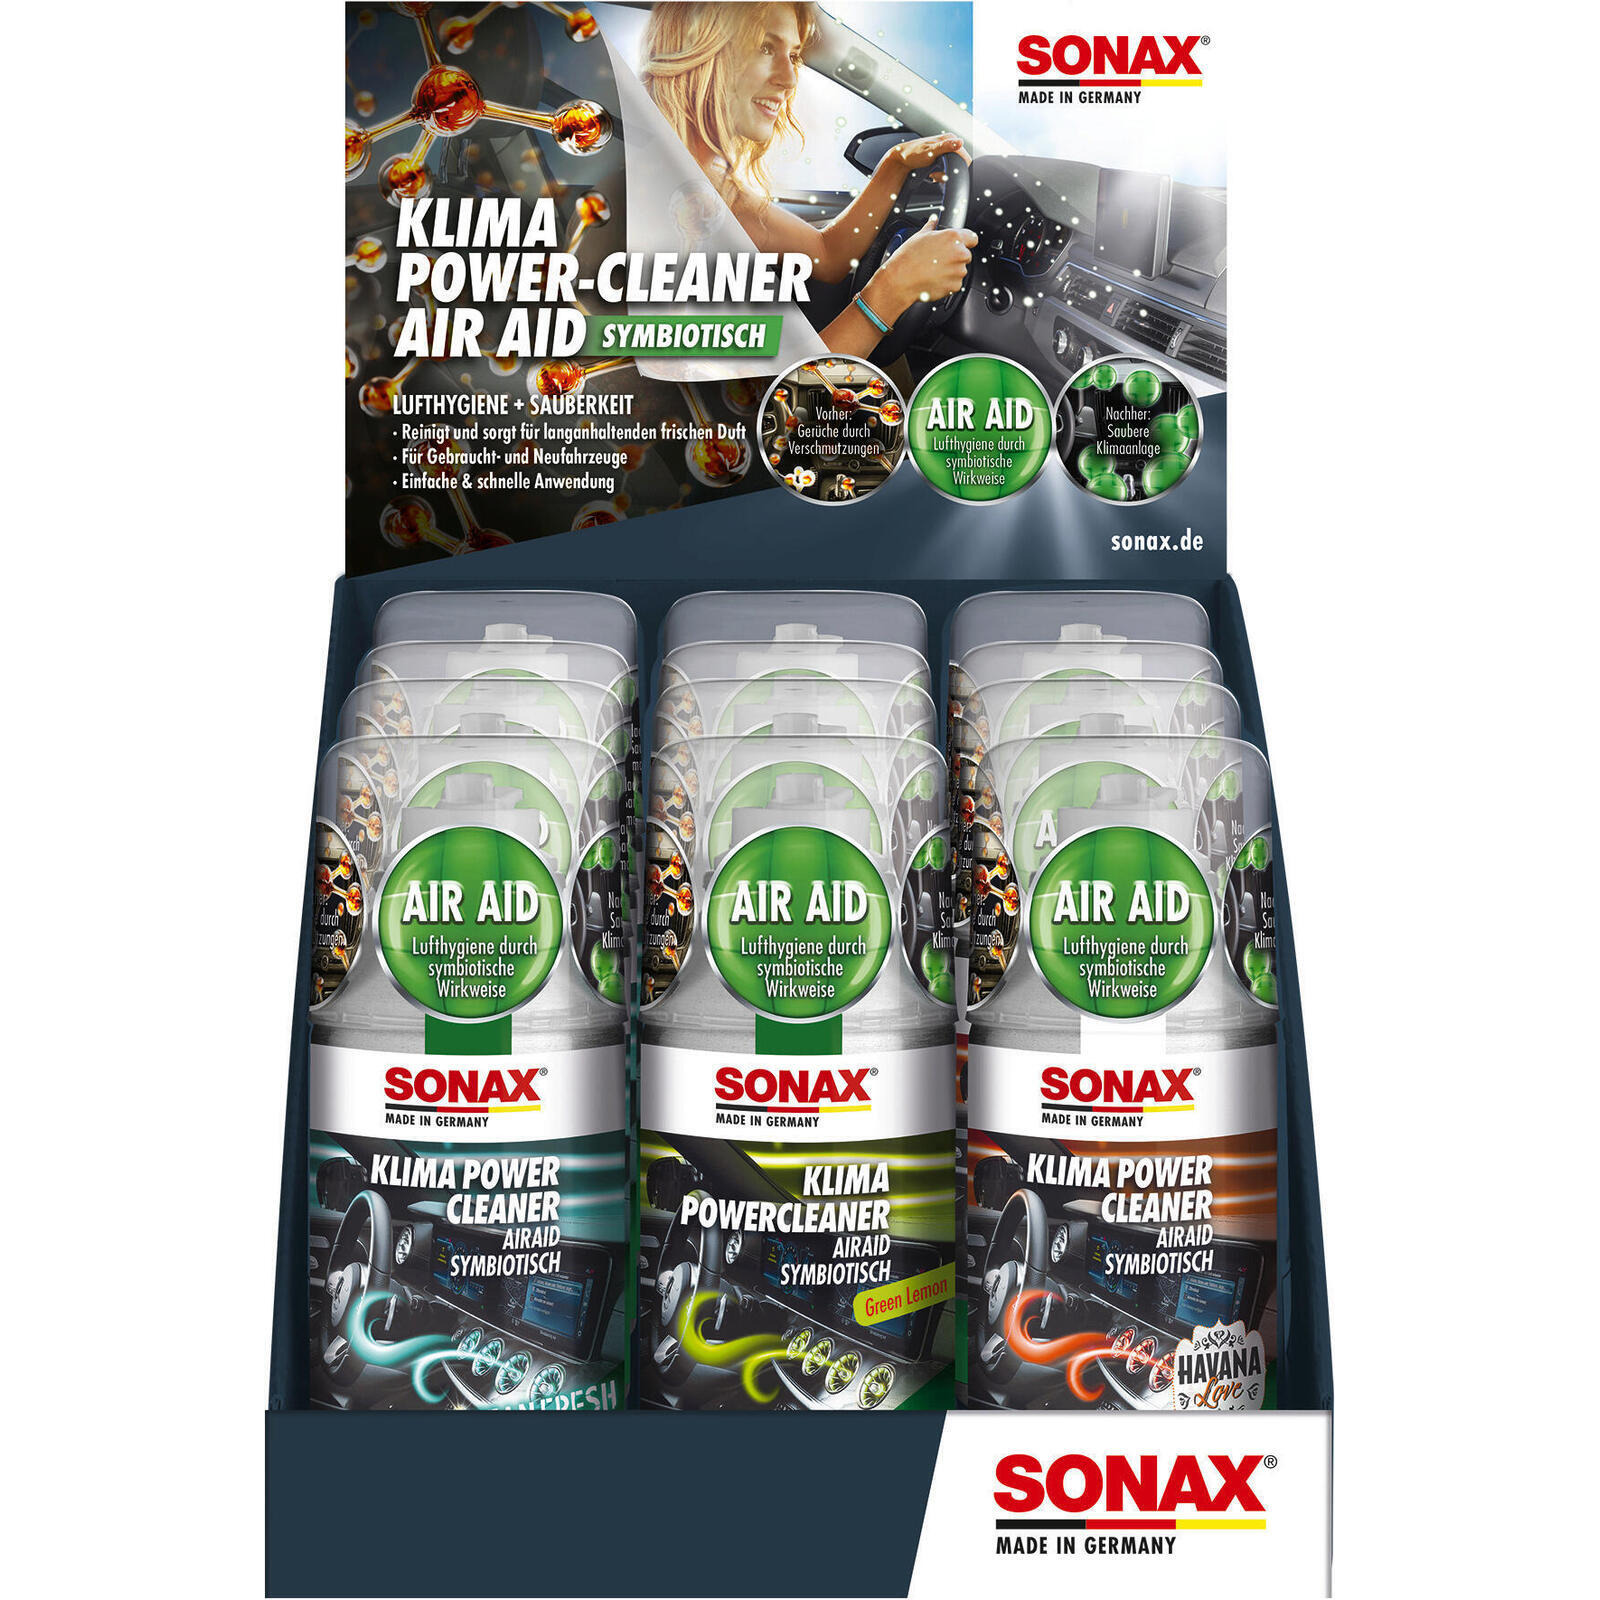 SONAX Klimaanlagenreiniger/-desinfizierer KlimaPowerCleaner AirAid symbiotisch Thekendisplay gemischt